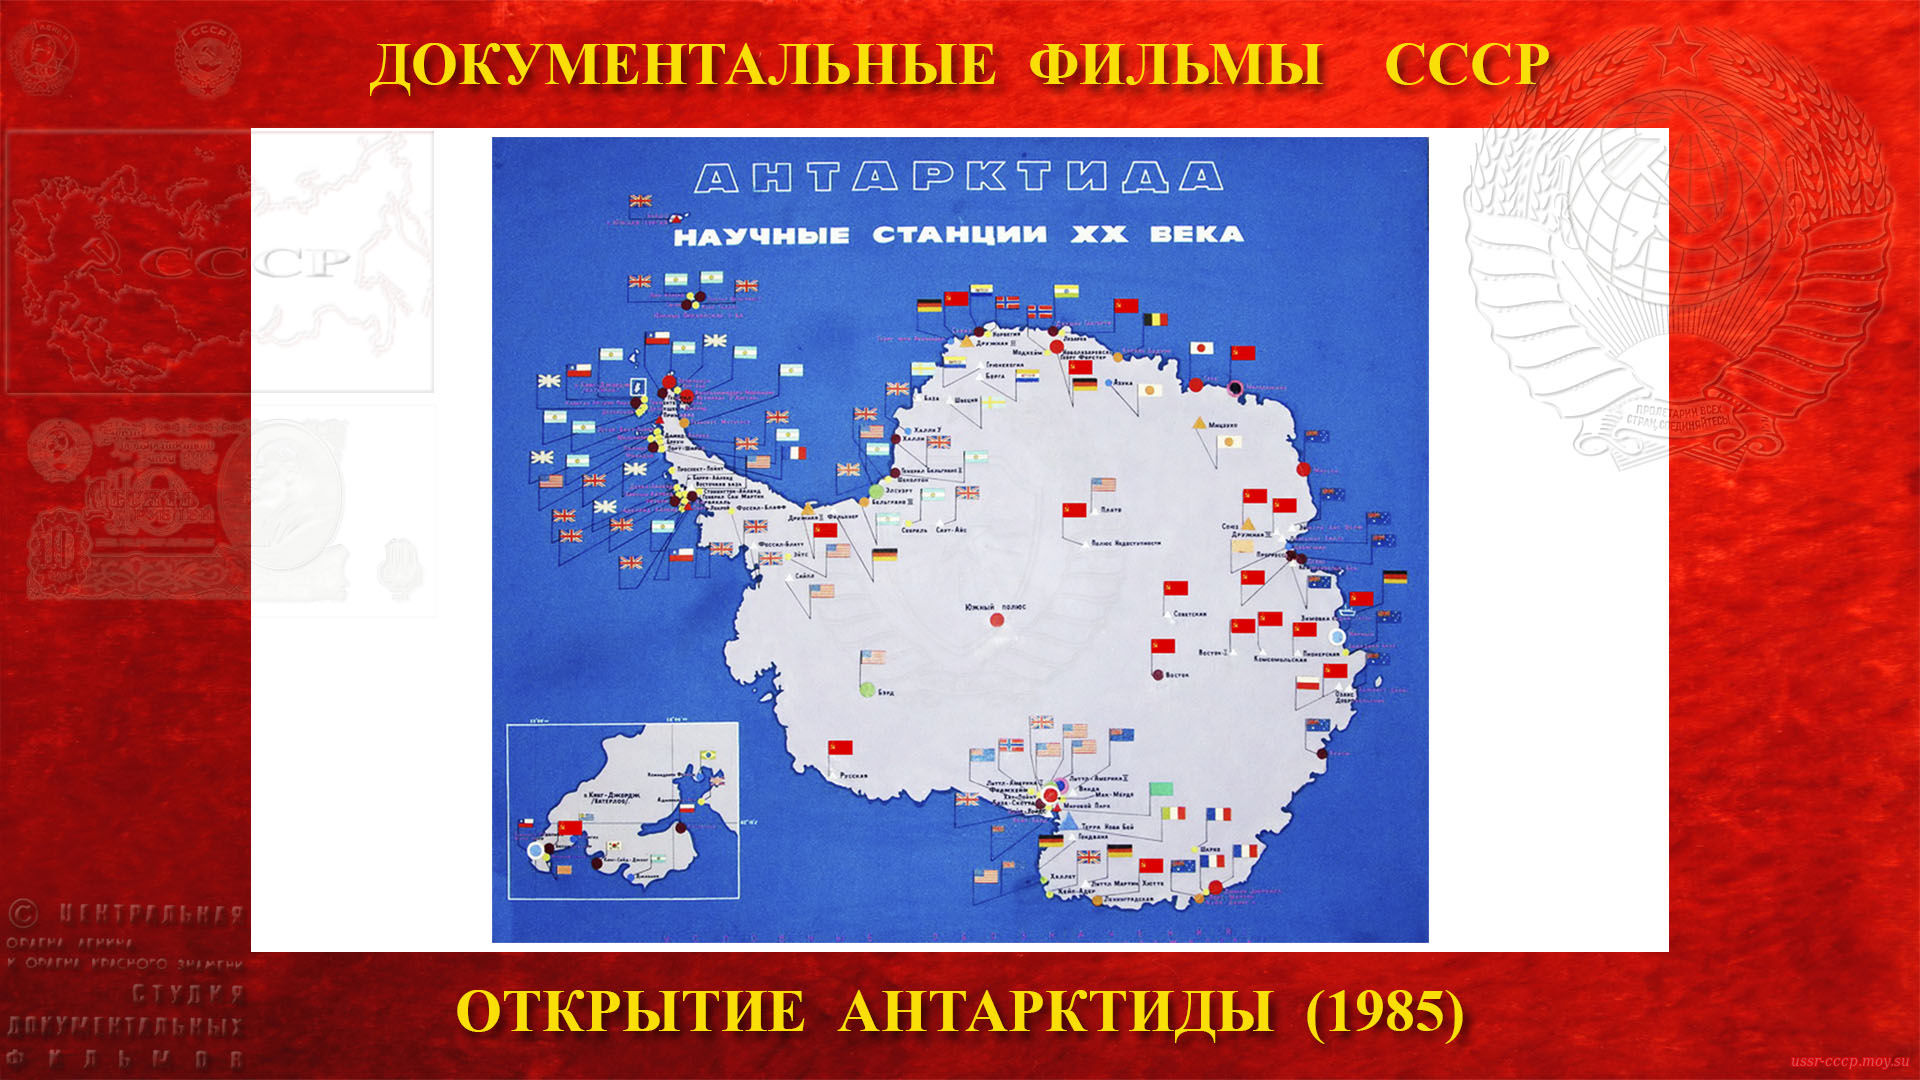 Открытие Антарктиды — Антарктида первый континент мира согласно договора 1959 года. Договор этот от имени нашей страны готовил вместе с другими подписал Сомов.